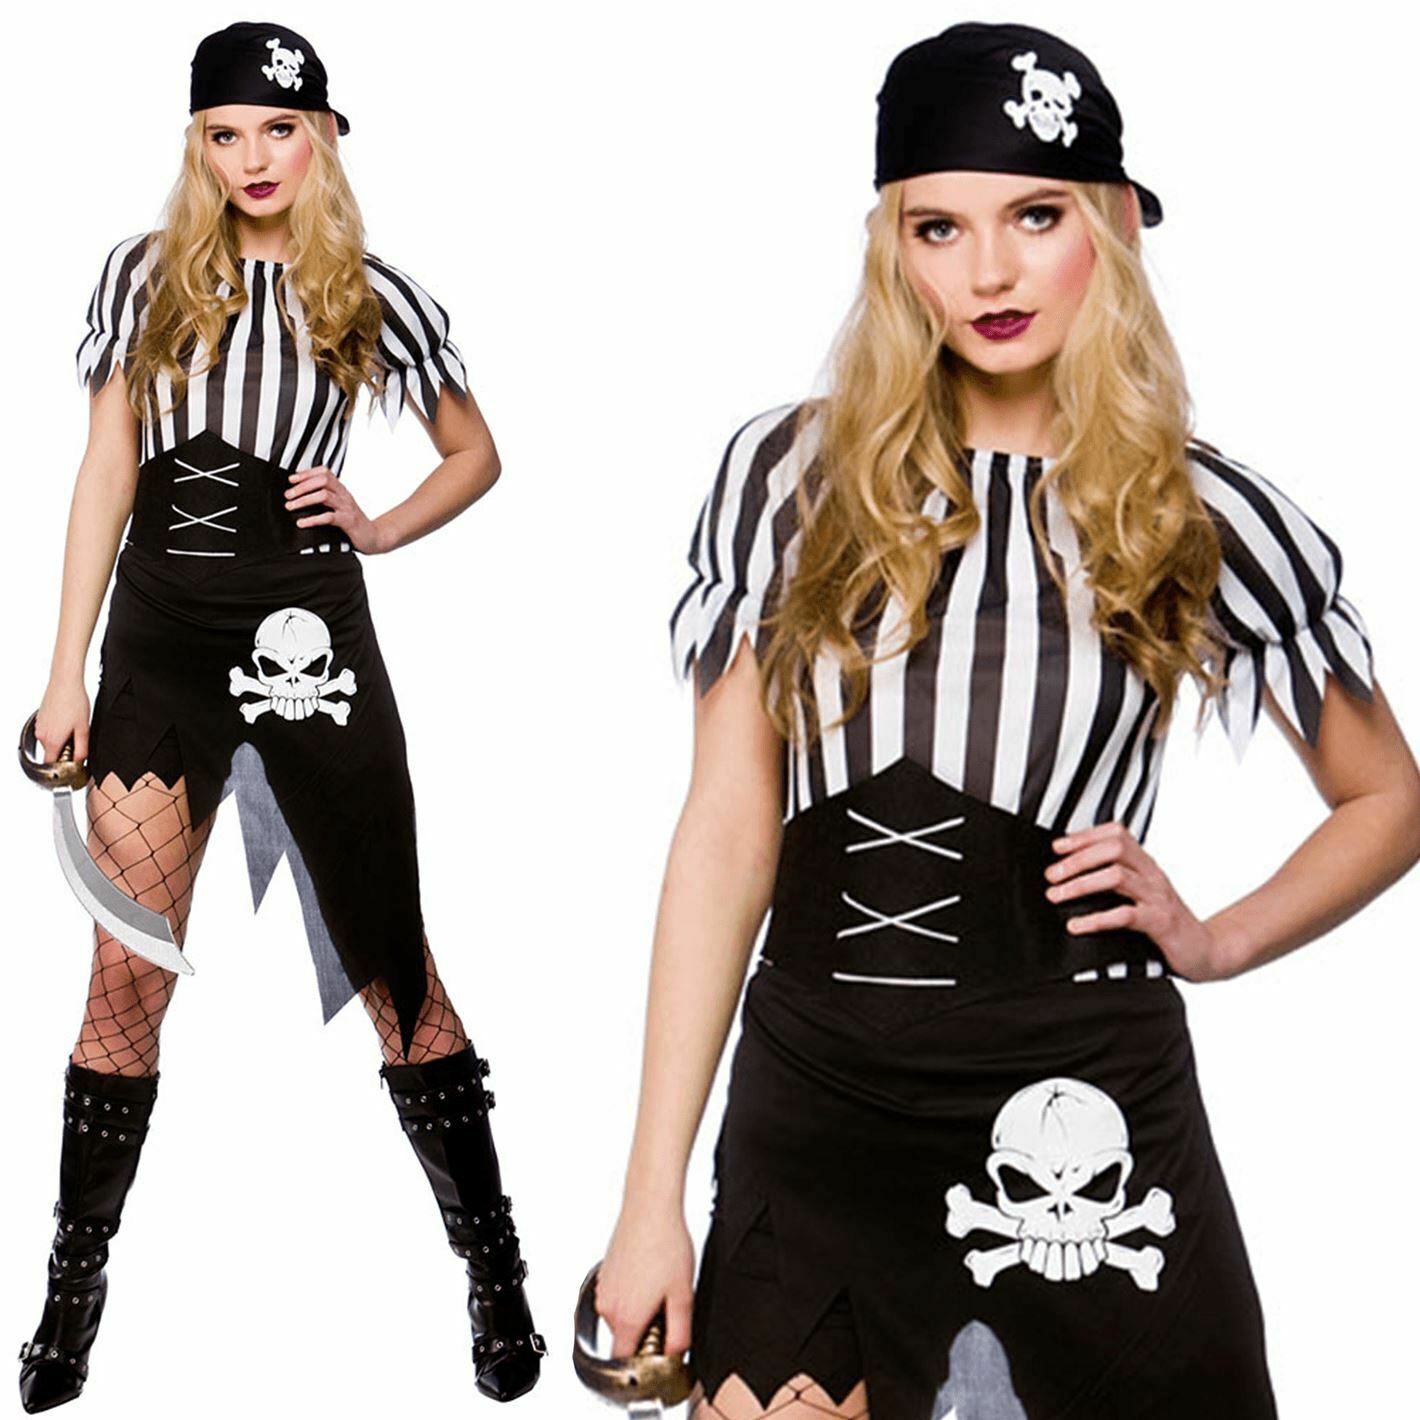 Shipwrecked Pirate Costume